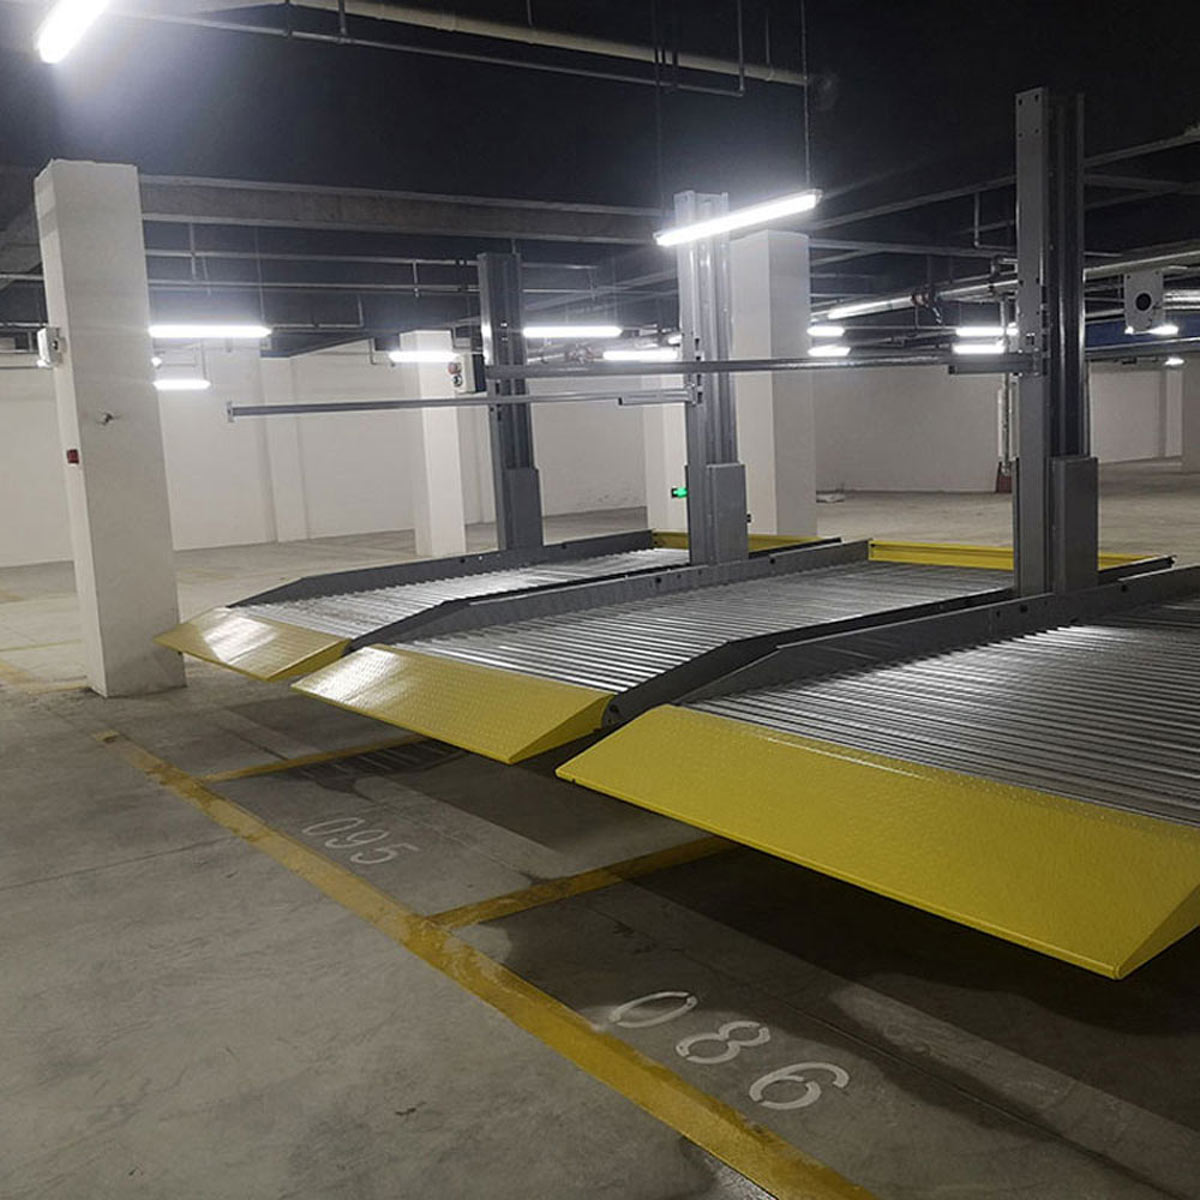 馬爾康立體停車庫改善區域停車四種解決模式